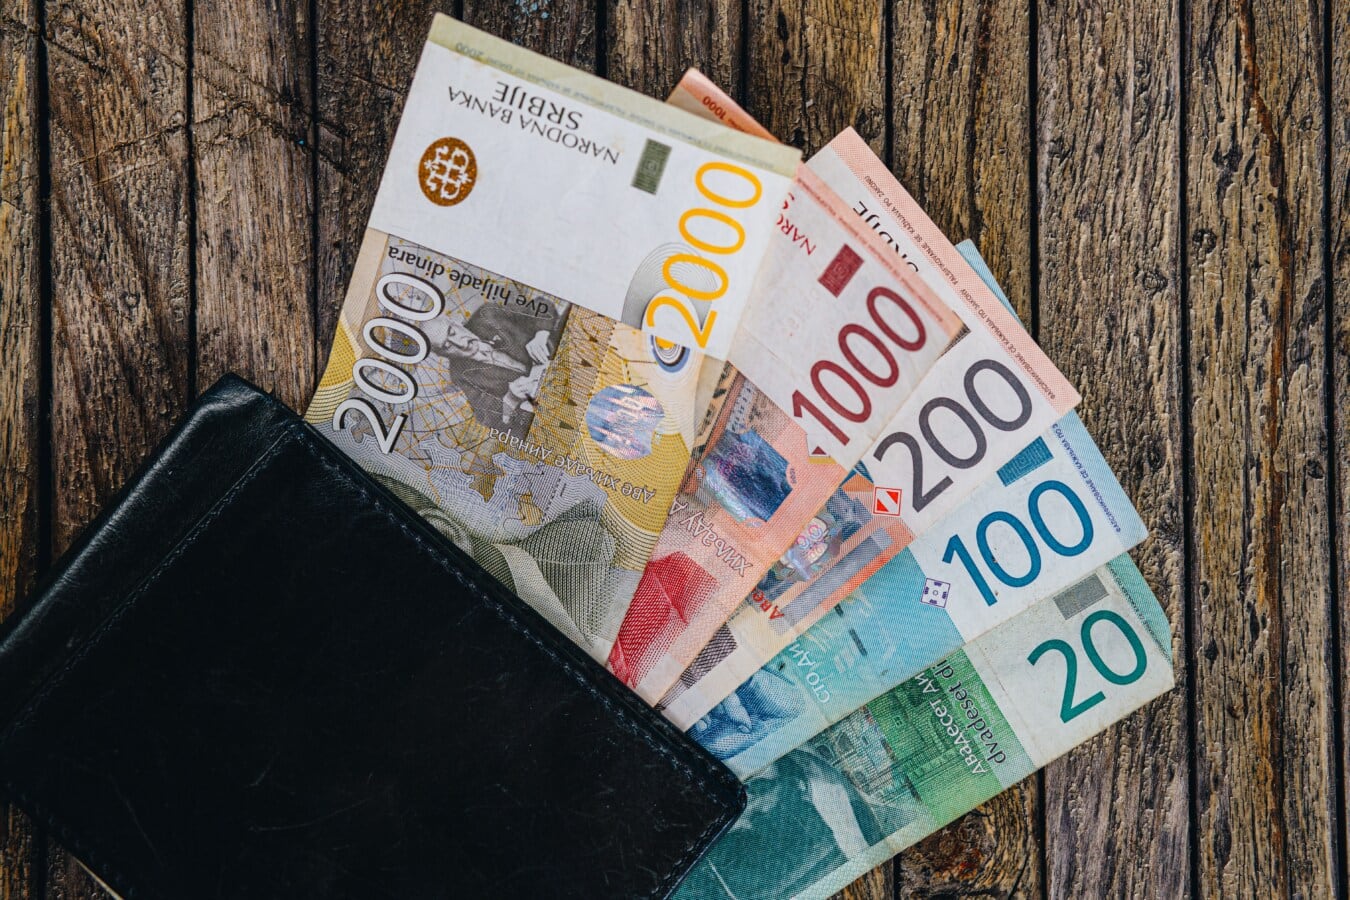 Serbia, papirpenger, penger, serbiske dinarer, kontanter, shopping, lommebok, økonomi, valuta, papir